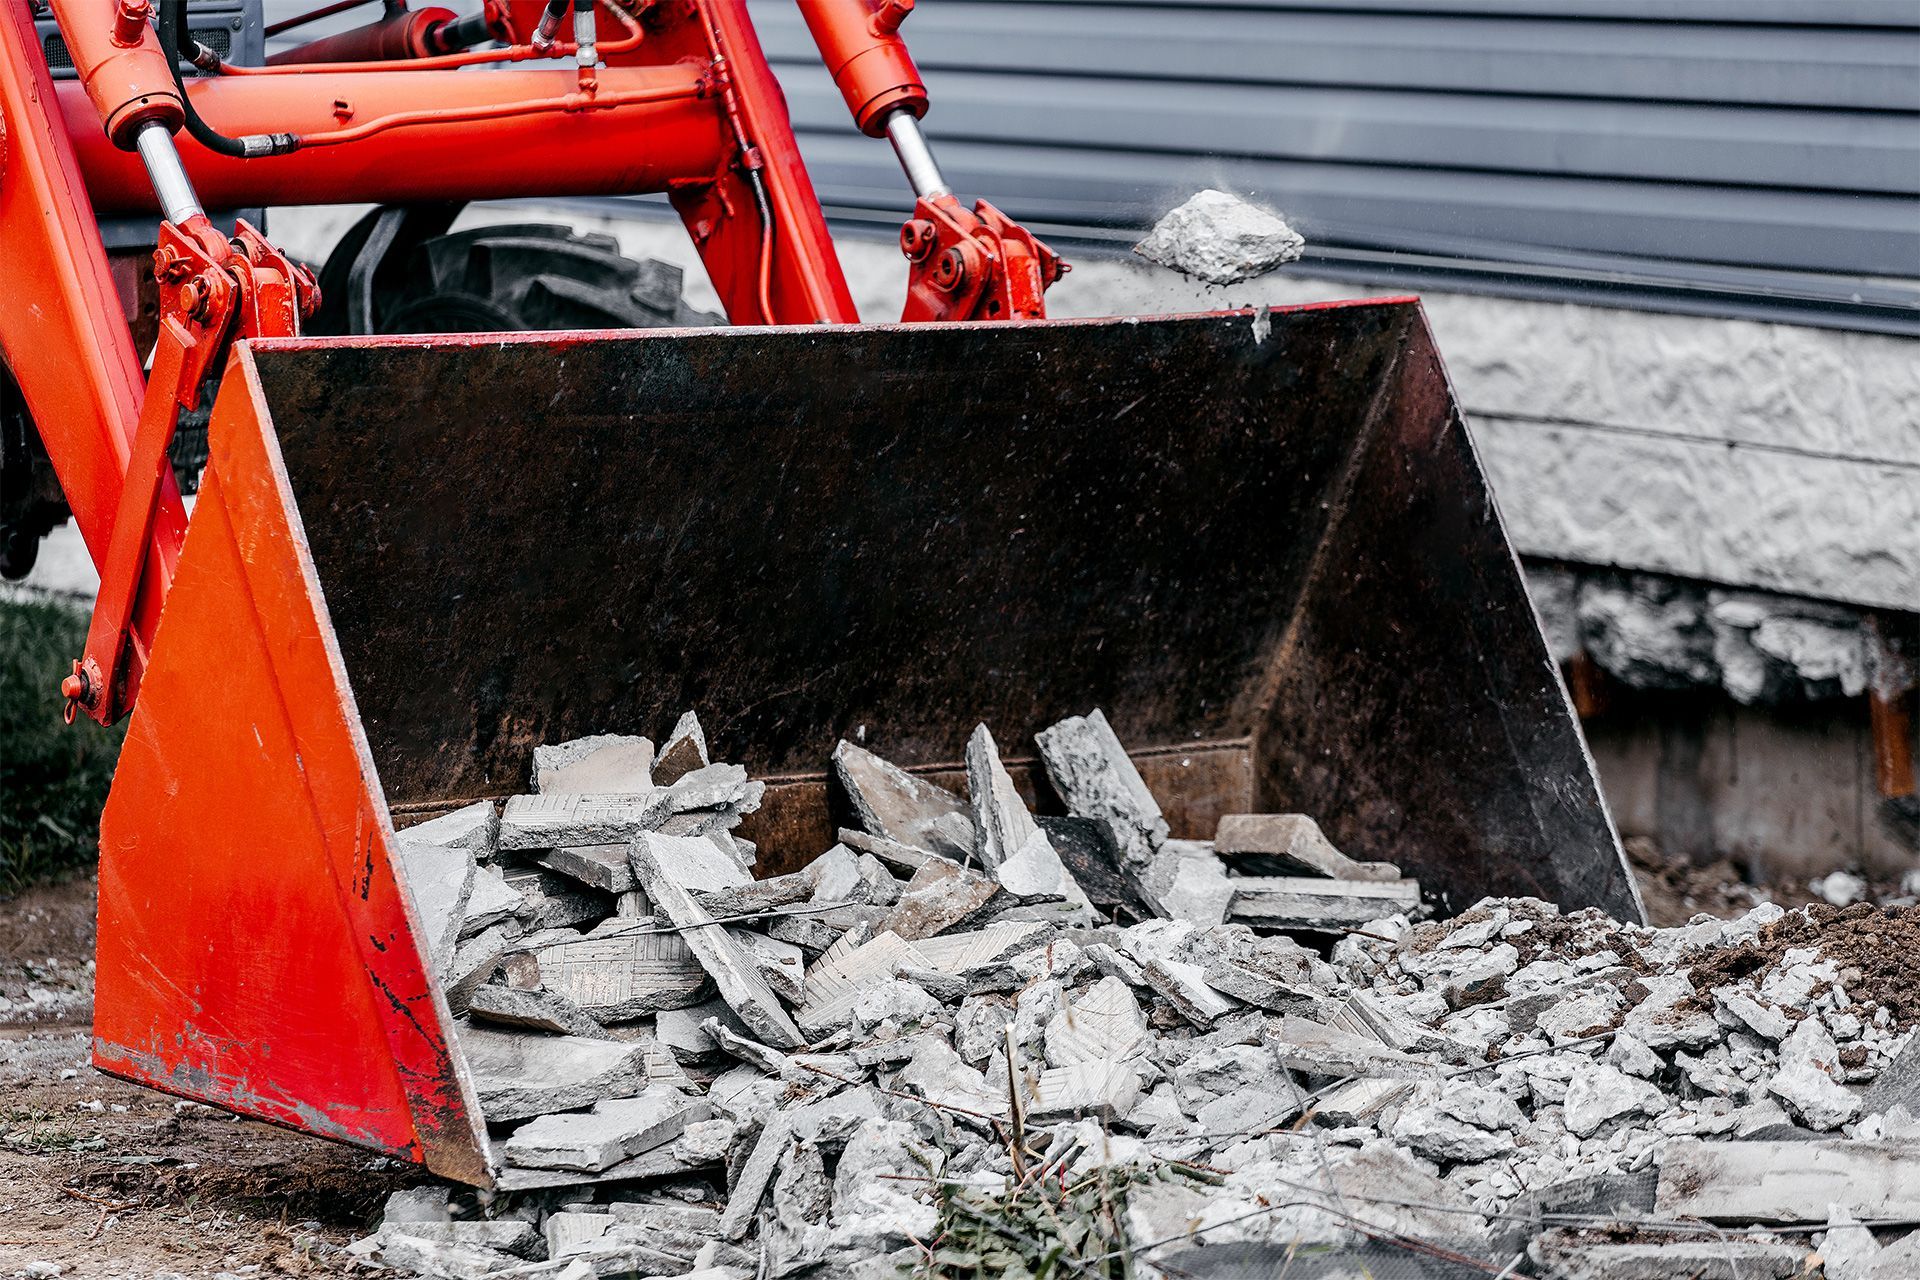 removing concrete debris using a tractor